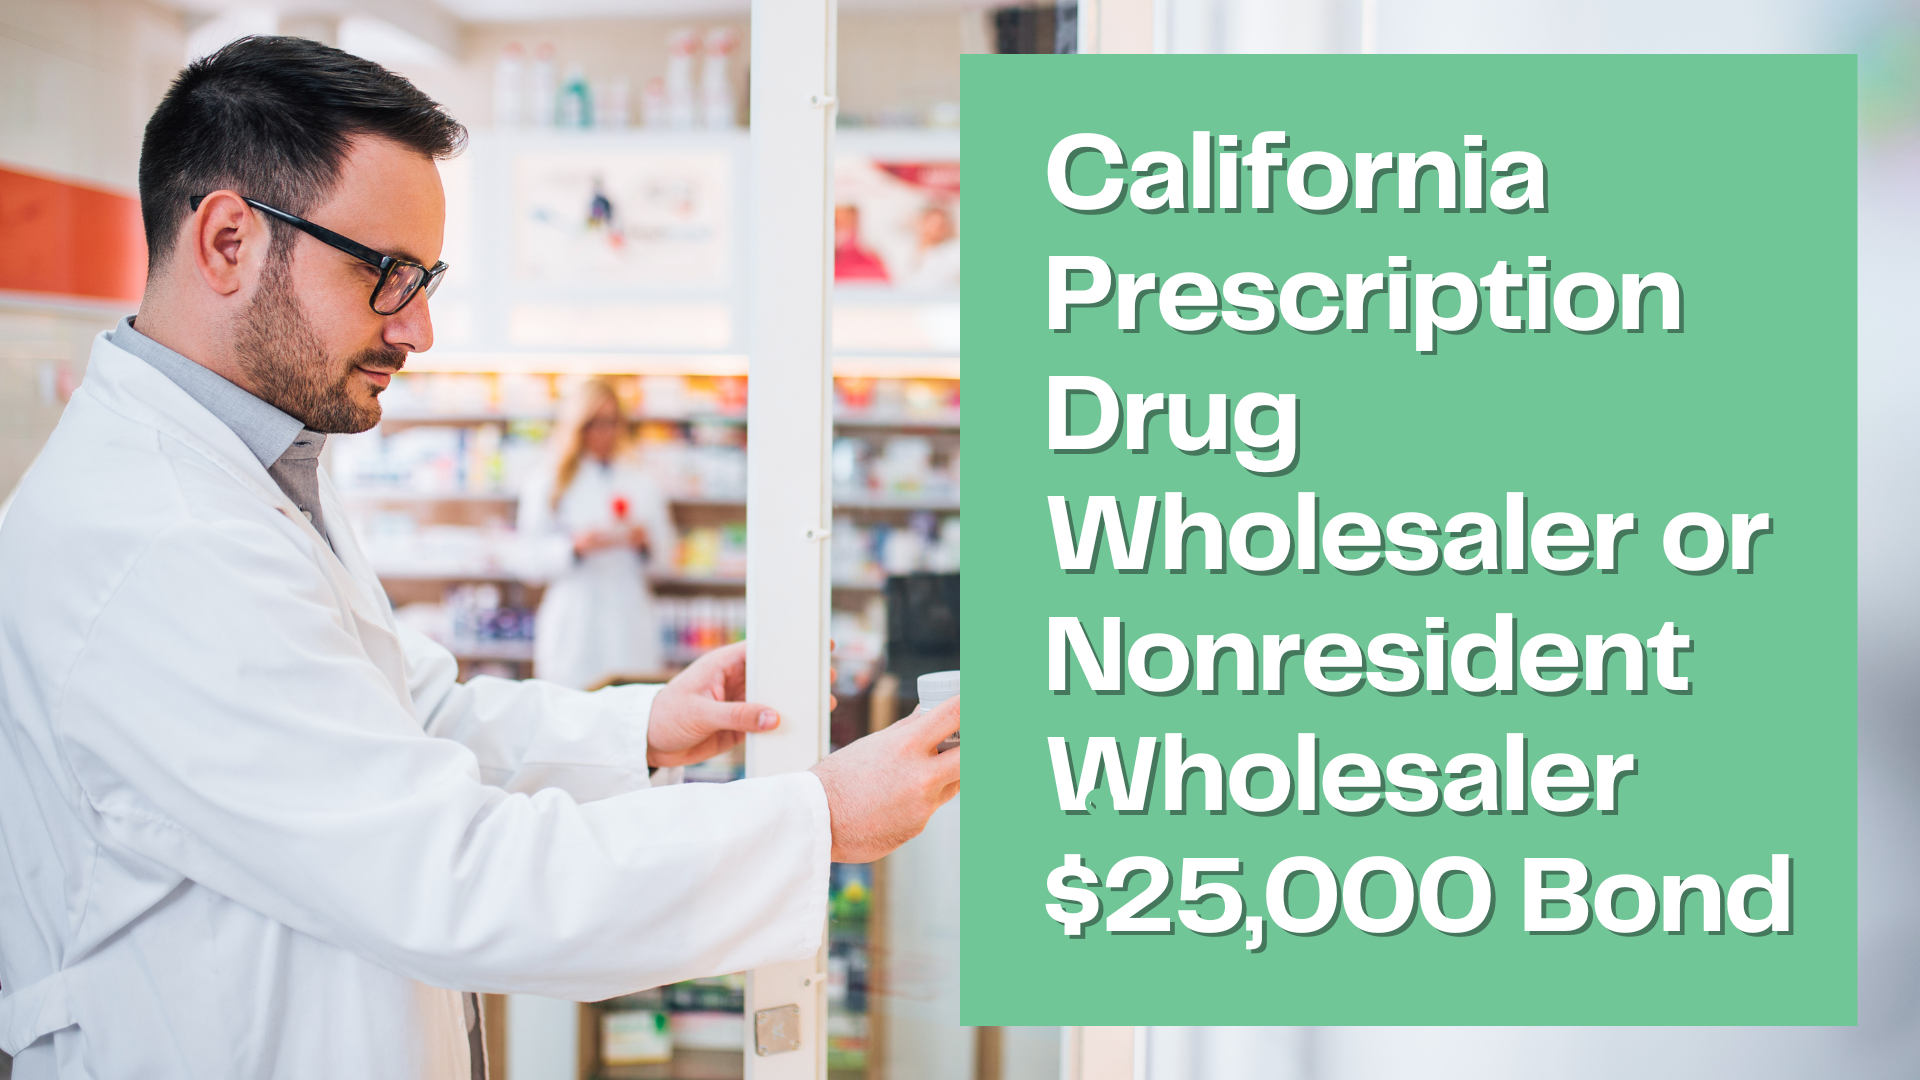 Surety Bond-California Prescription Drug Wholesaler or Nonresident Wholesaler $25,000 Bond